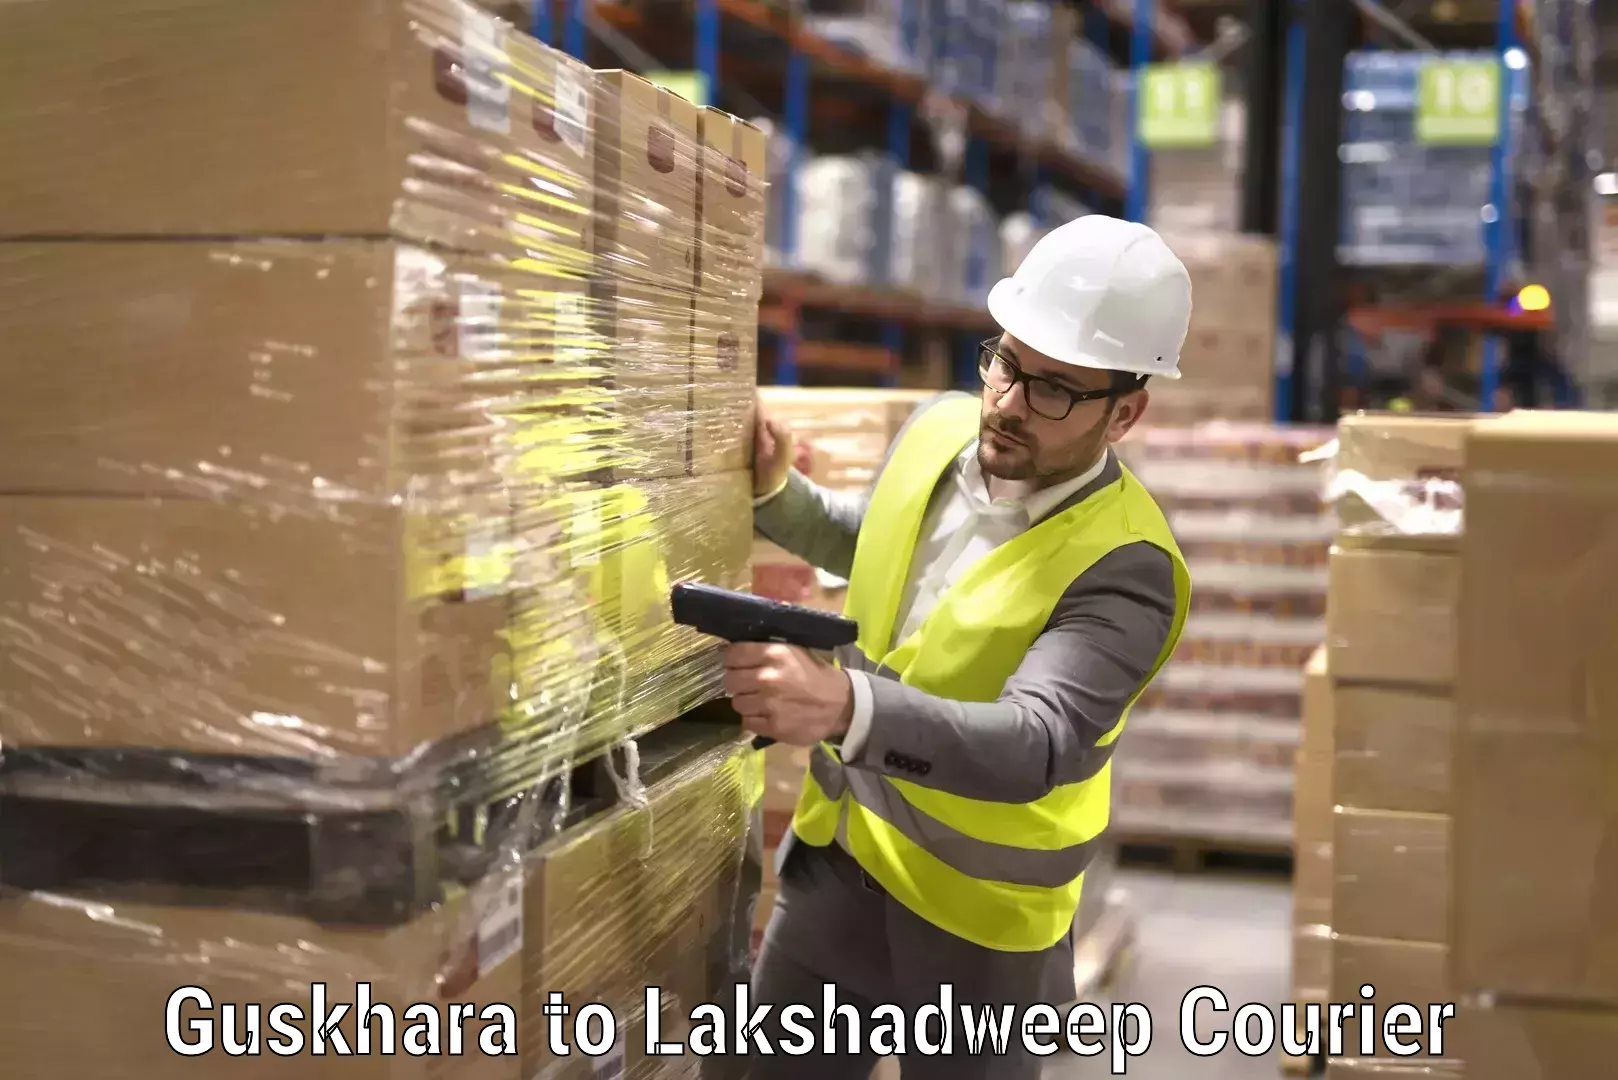 Furniture moving solutions Guskhara to Lakshadweep